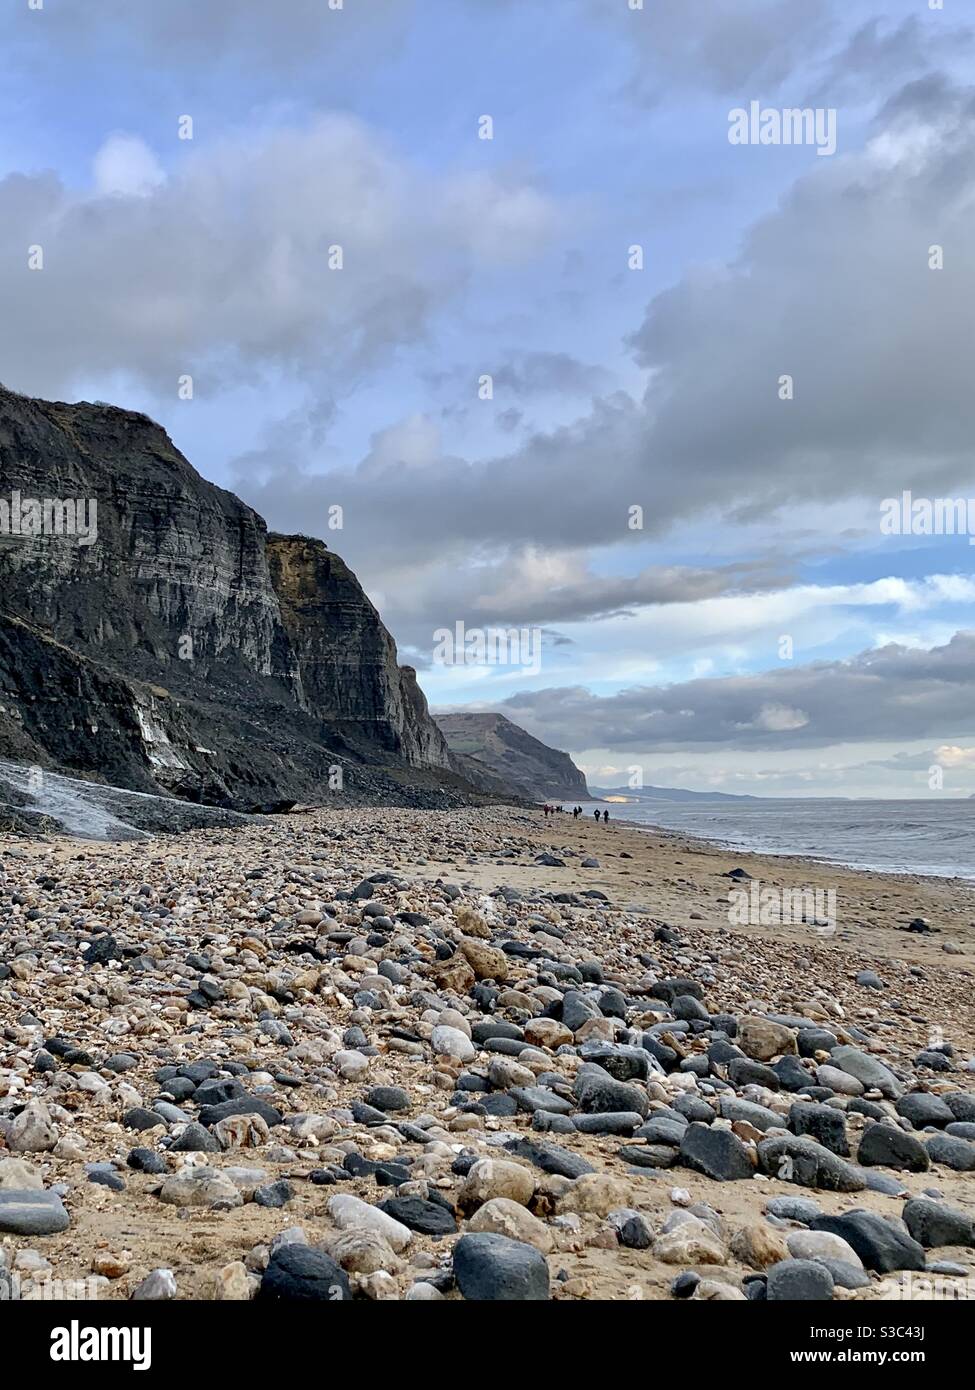 Le scure scogliere di Charmouth Beach sulla costa del Dorset dopo la tempesta Bella. Caccia ai fossili, passeggiate e lotta alla spiaggia. Foto Stock